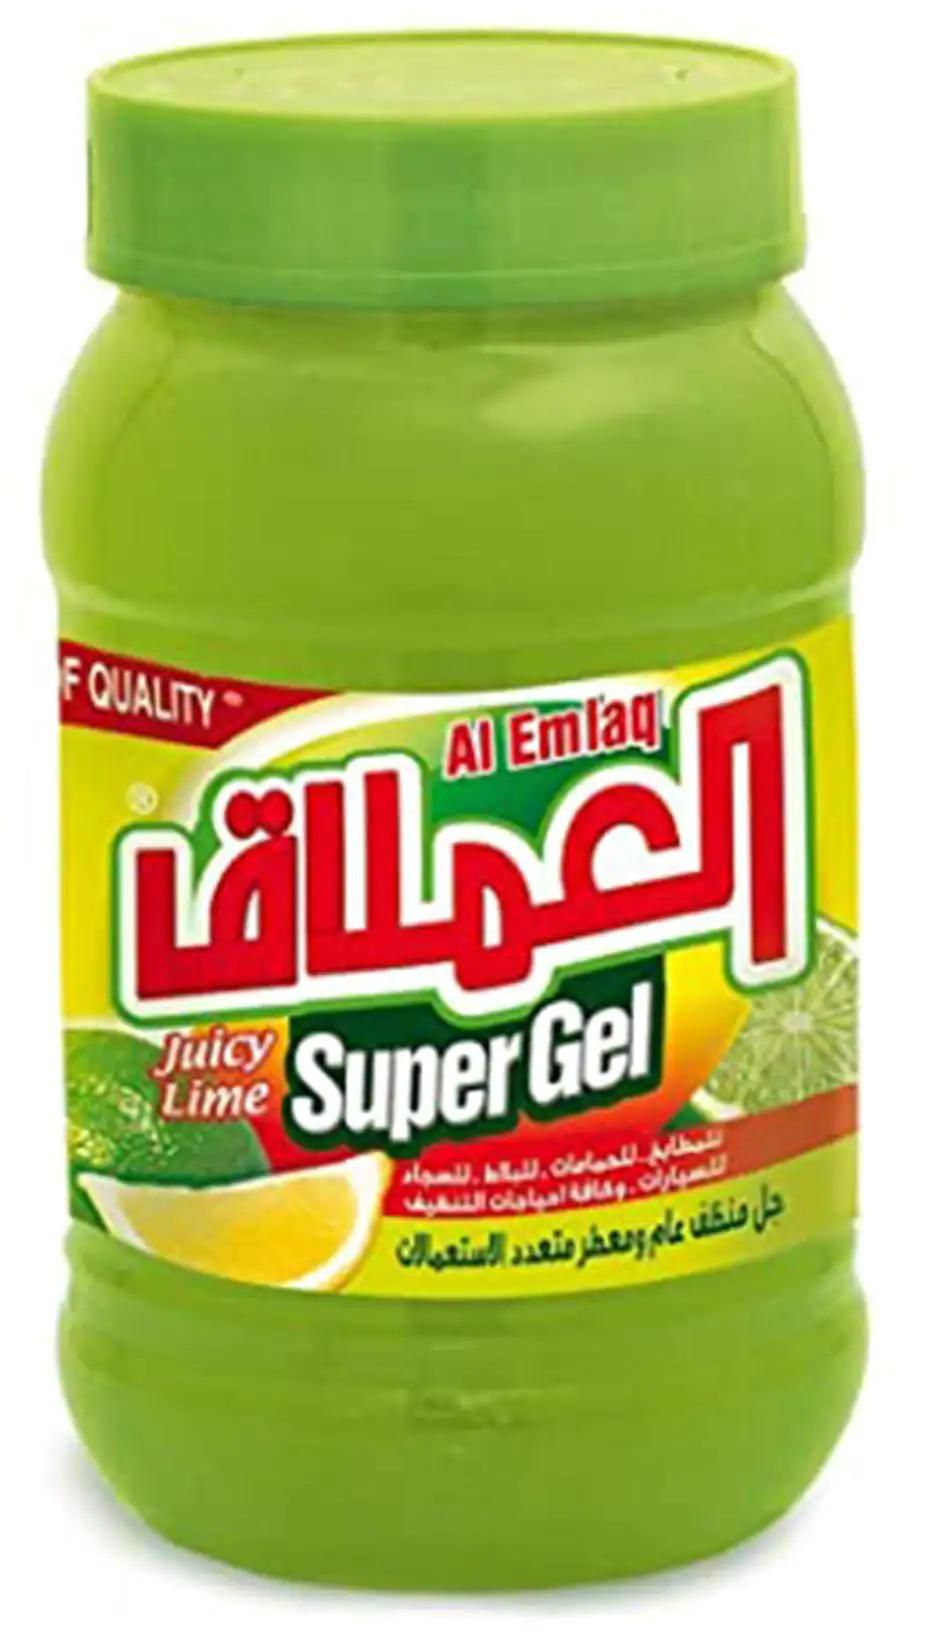 Al Emlaq super gel juicy lime 1 Kg